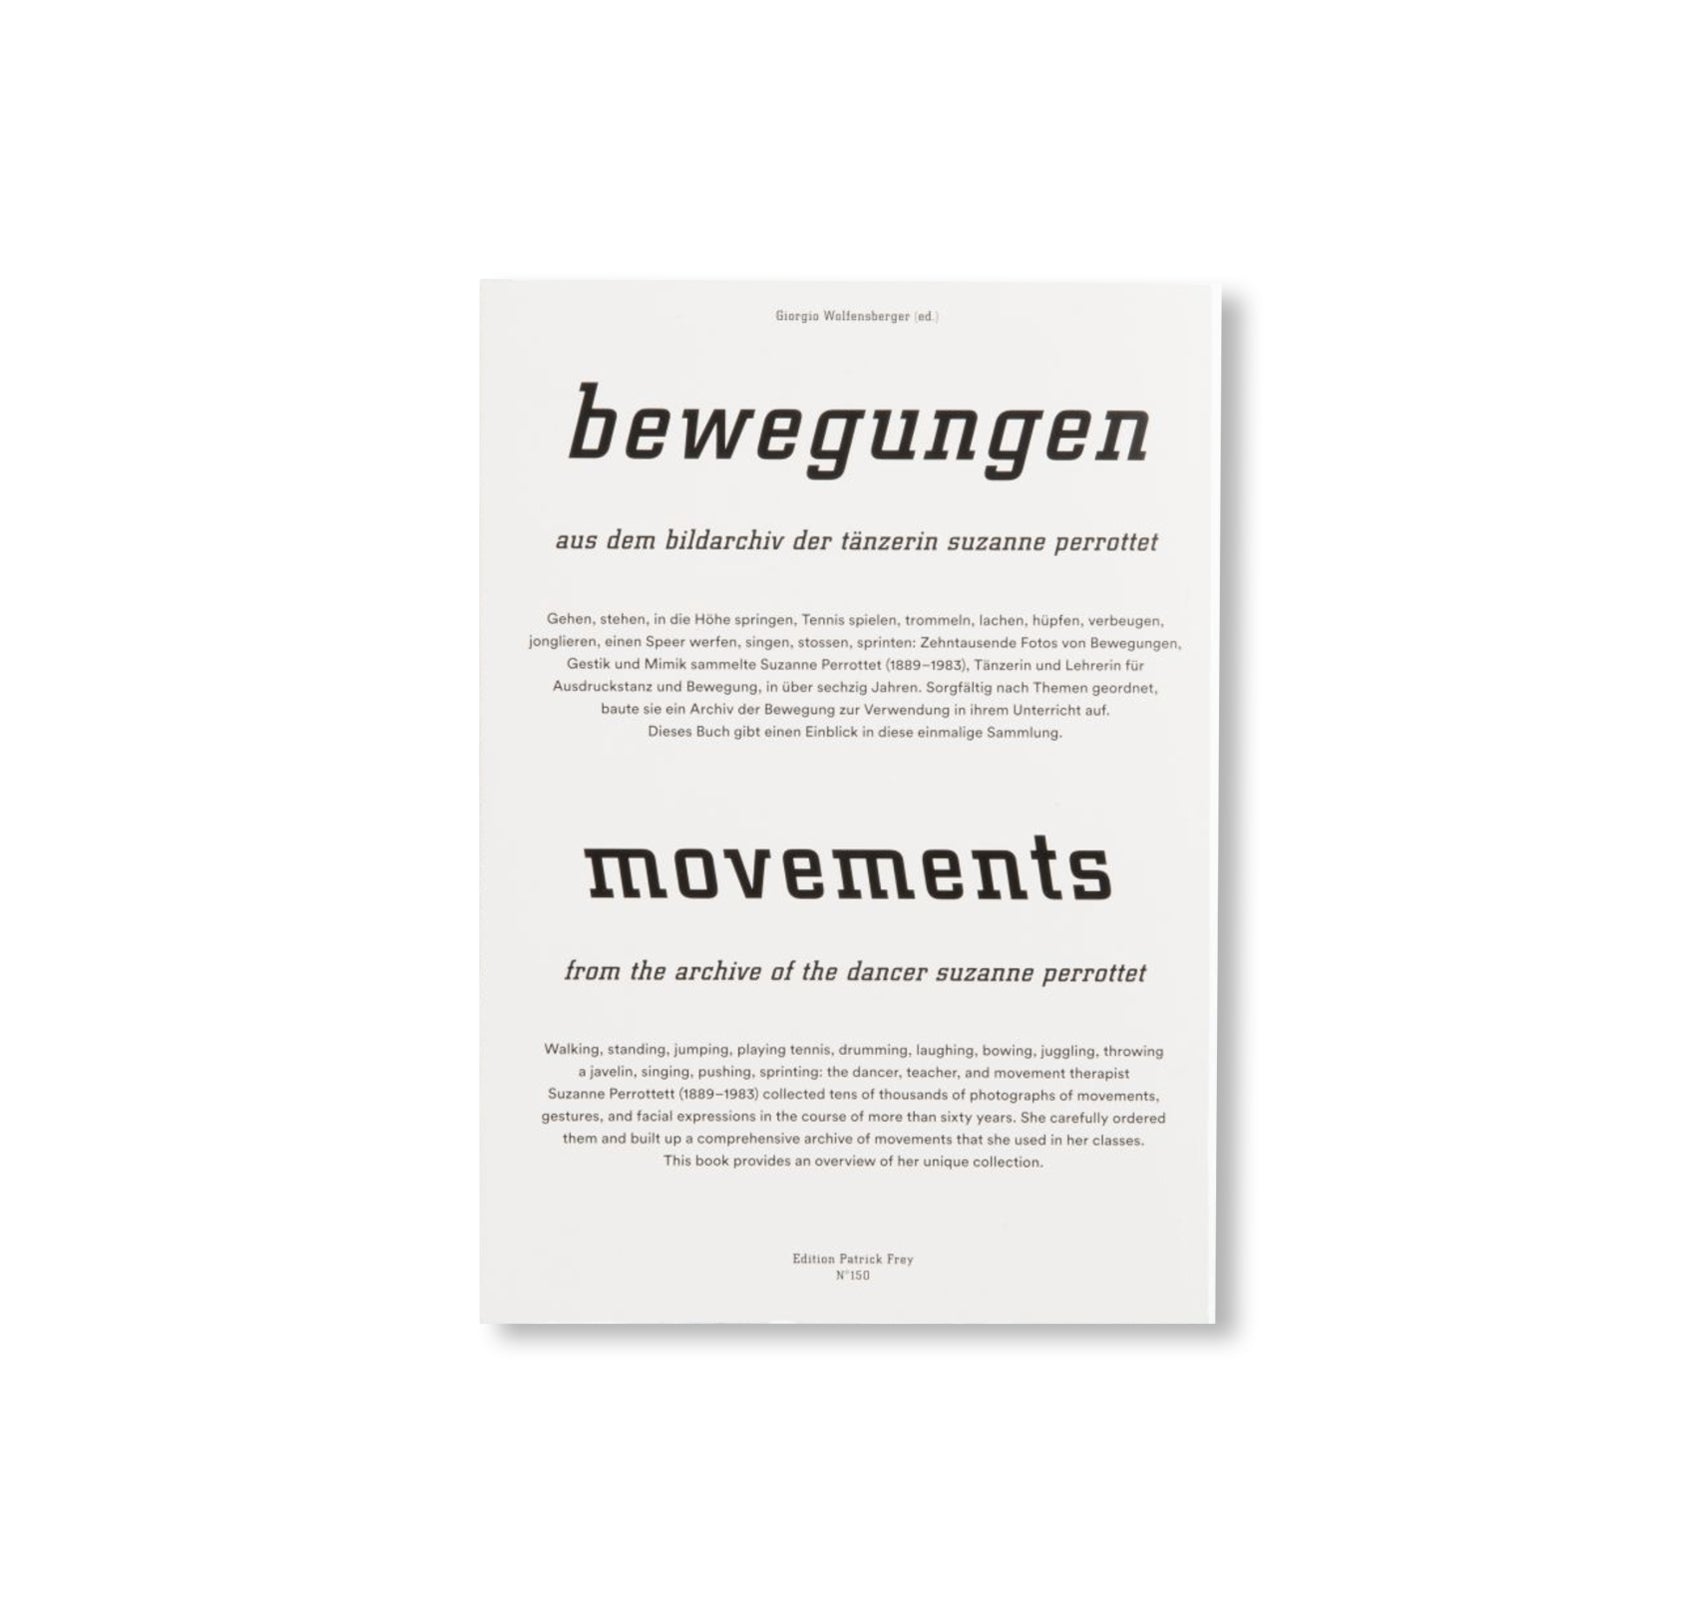 BEWEGUNGEN / MOVEMENTS by Suzanne Perrottet